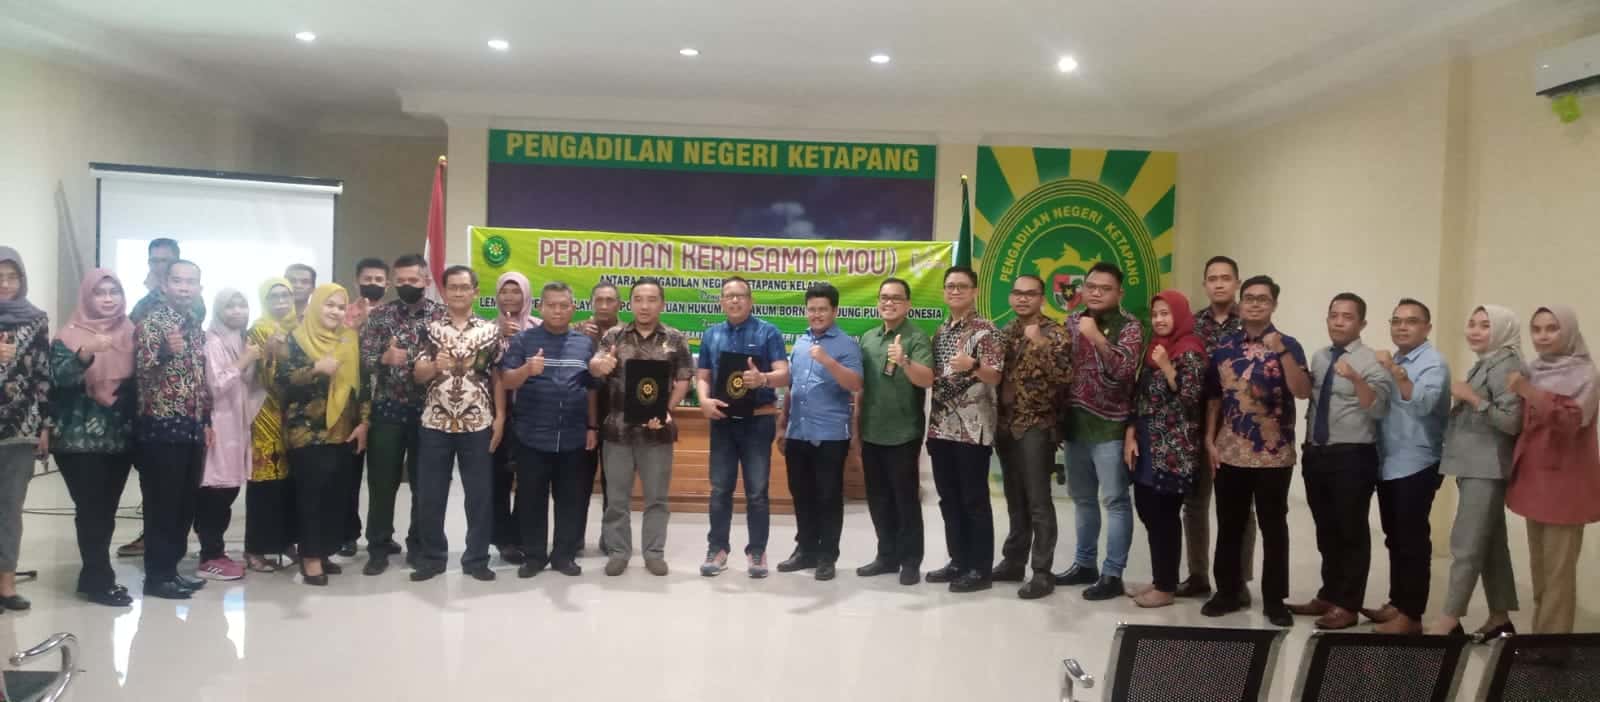 Foto bersama usai MoU antara Lembaga Bantuan Hukum (LBH) Borneo Tanjungpura Indonesia bersama Pengadilan Negeri (PN) Ketapang. (Foto: Ad LC)